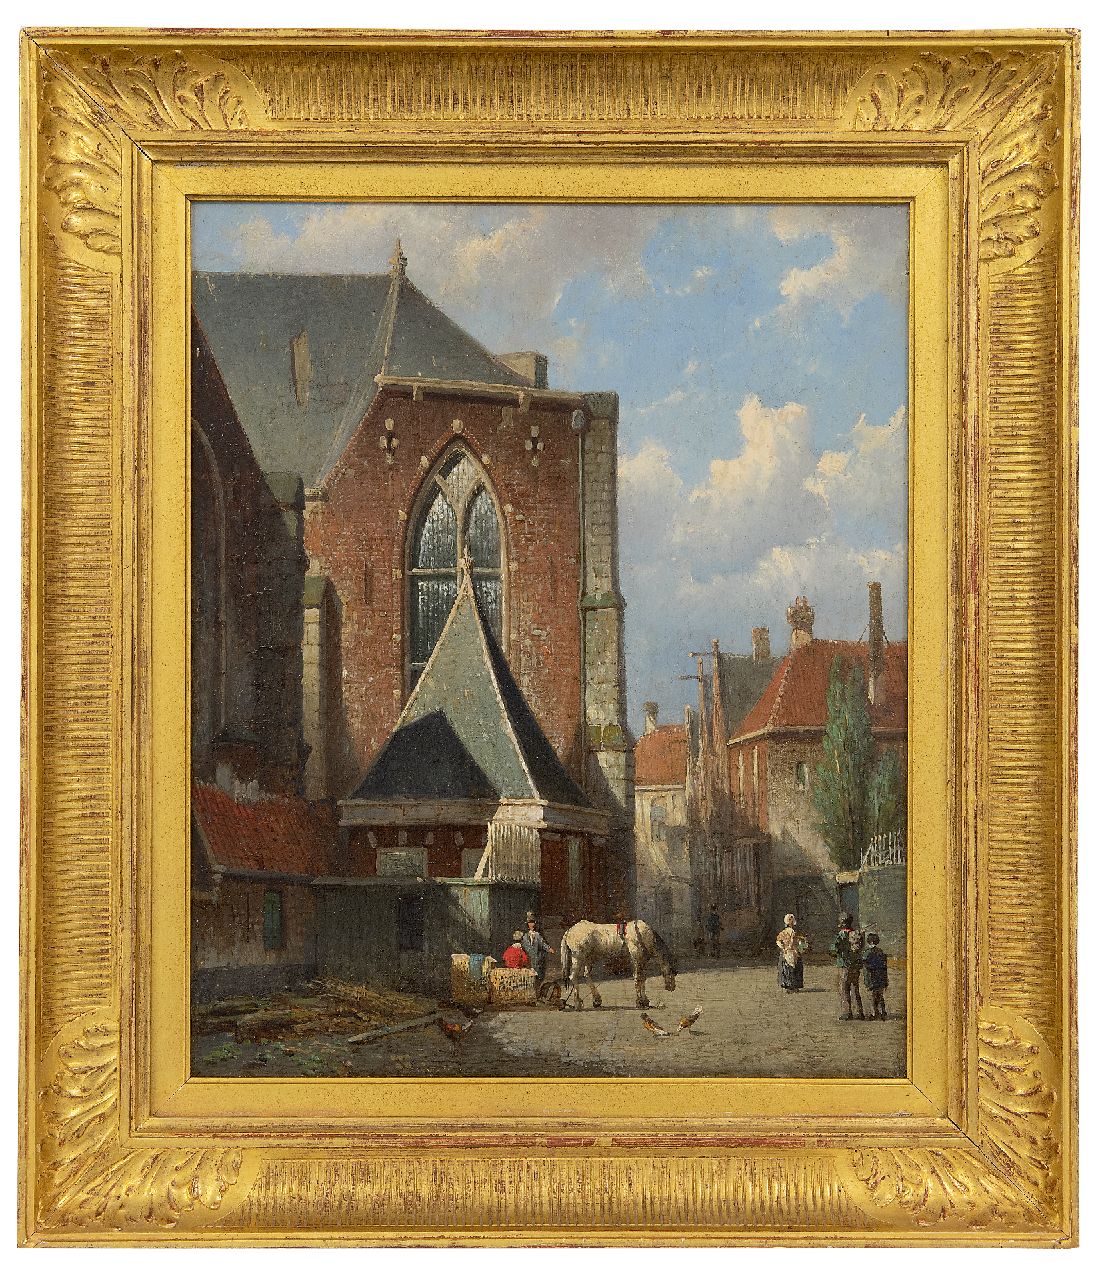 Koekkoek W.  | Willem Koekkoek | Paintings offered for sale | View of the Oude Kerk at the Oudekerksplein, Amsterdam, oil on panel 35.4 x 29.0 cm, painted ca. 1860-1862